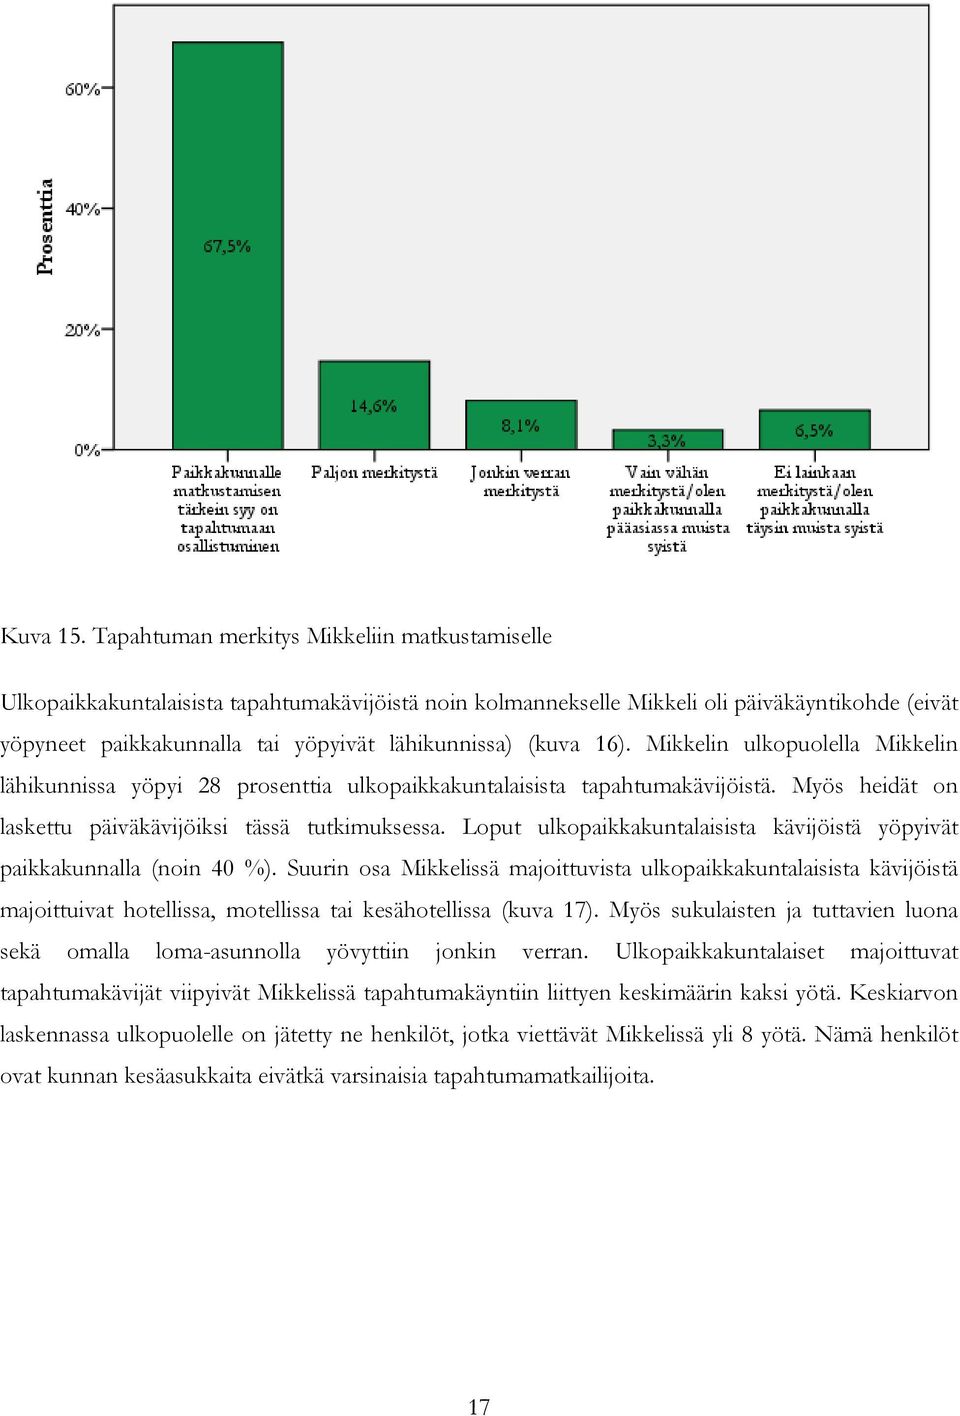 (kuva 16). Mikkelin ulkopuolella Mikkelin lähikunnissa yöpyi 28 prosenttia ulkopaikkakuntalaisista tapahtumakävijöistä. Myös heidät on laskettu päiväkävijöiksi tässä tutkimuksessa.